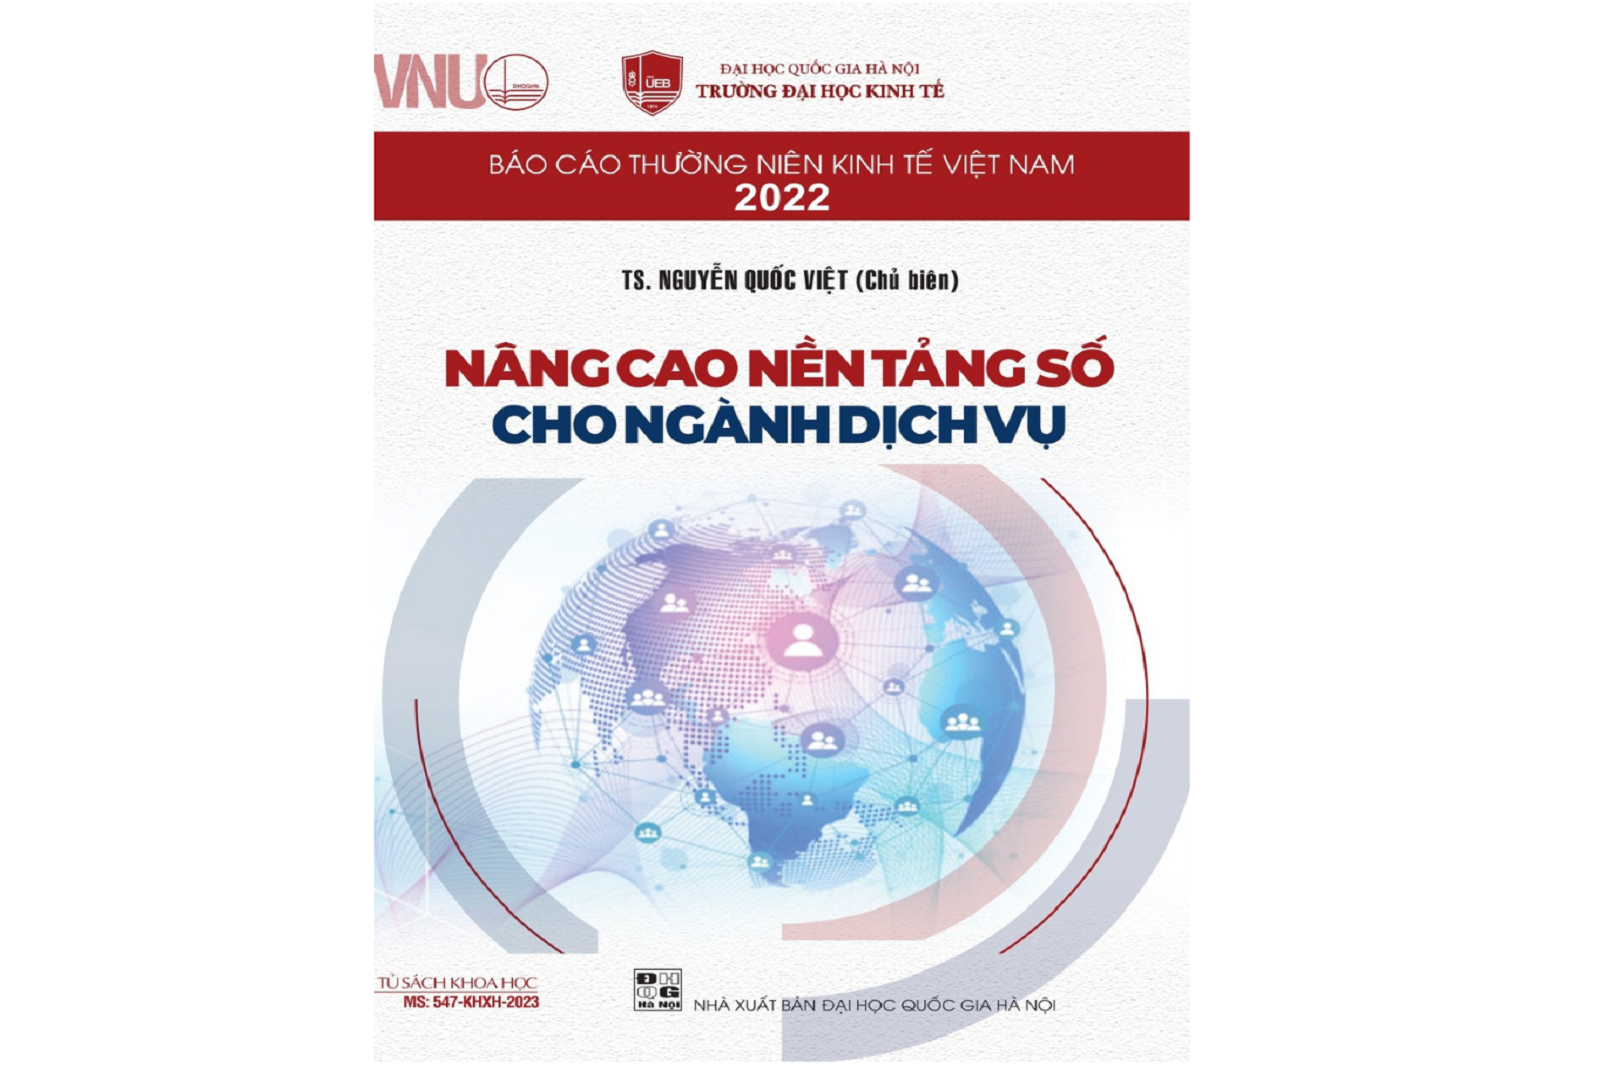  Báo cáo Thường niên Kinh tế Việt Nam 2022: Nâng cao nền tảng số cho ngành dịch vụ